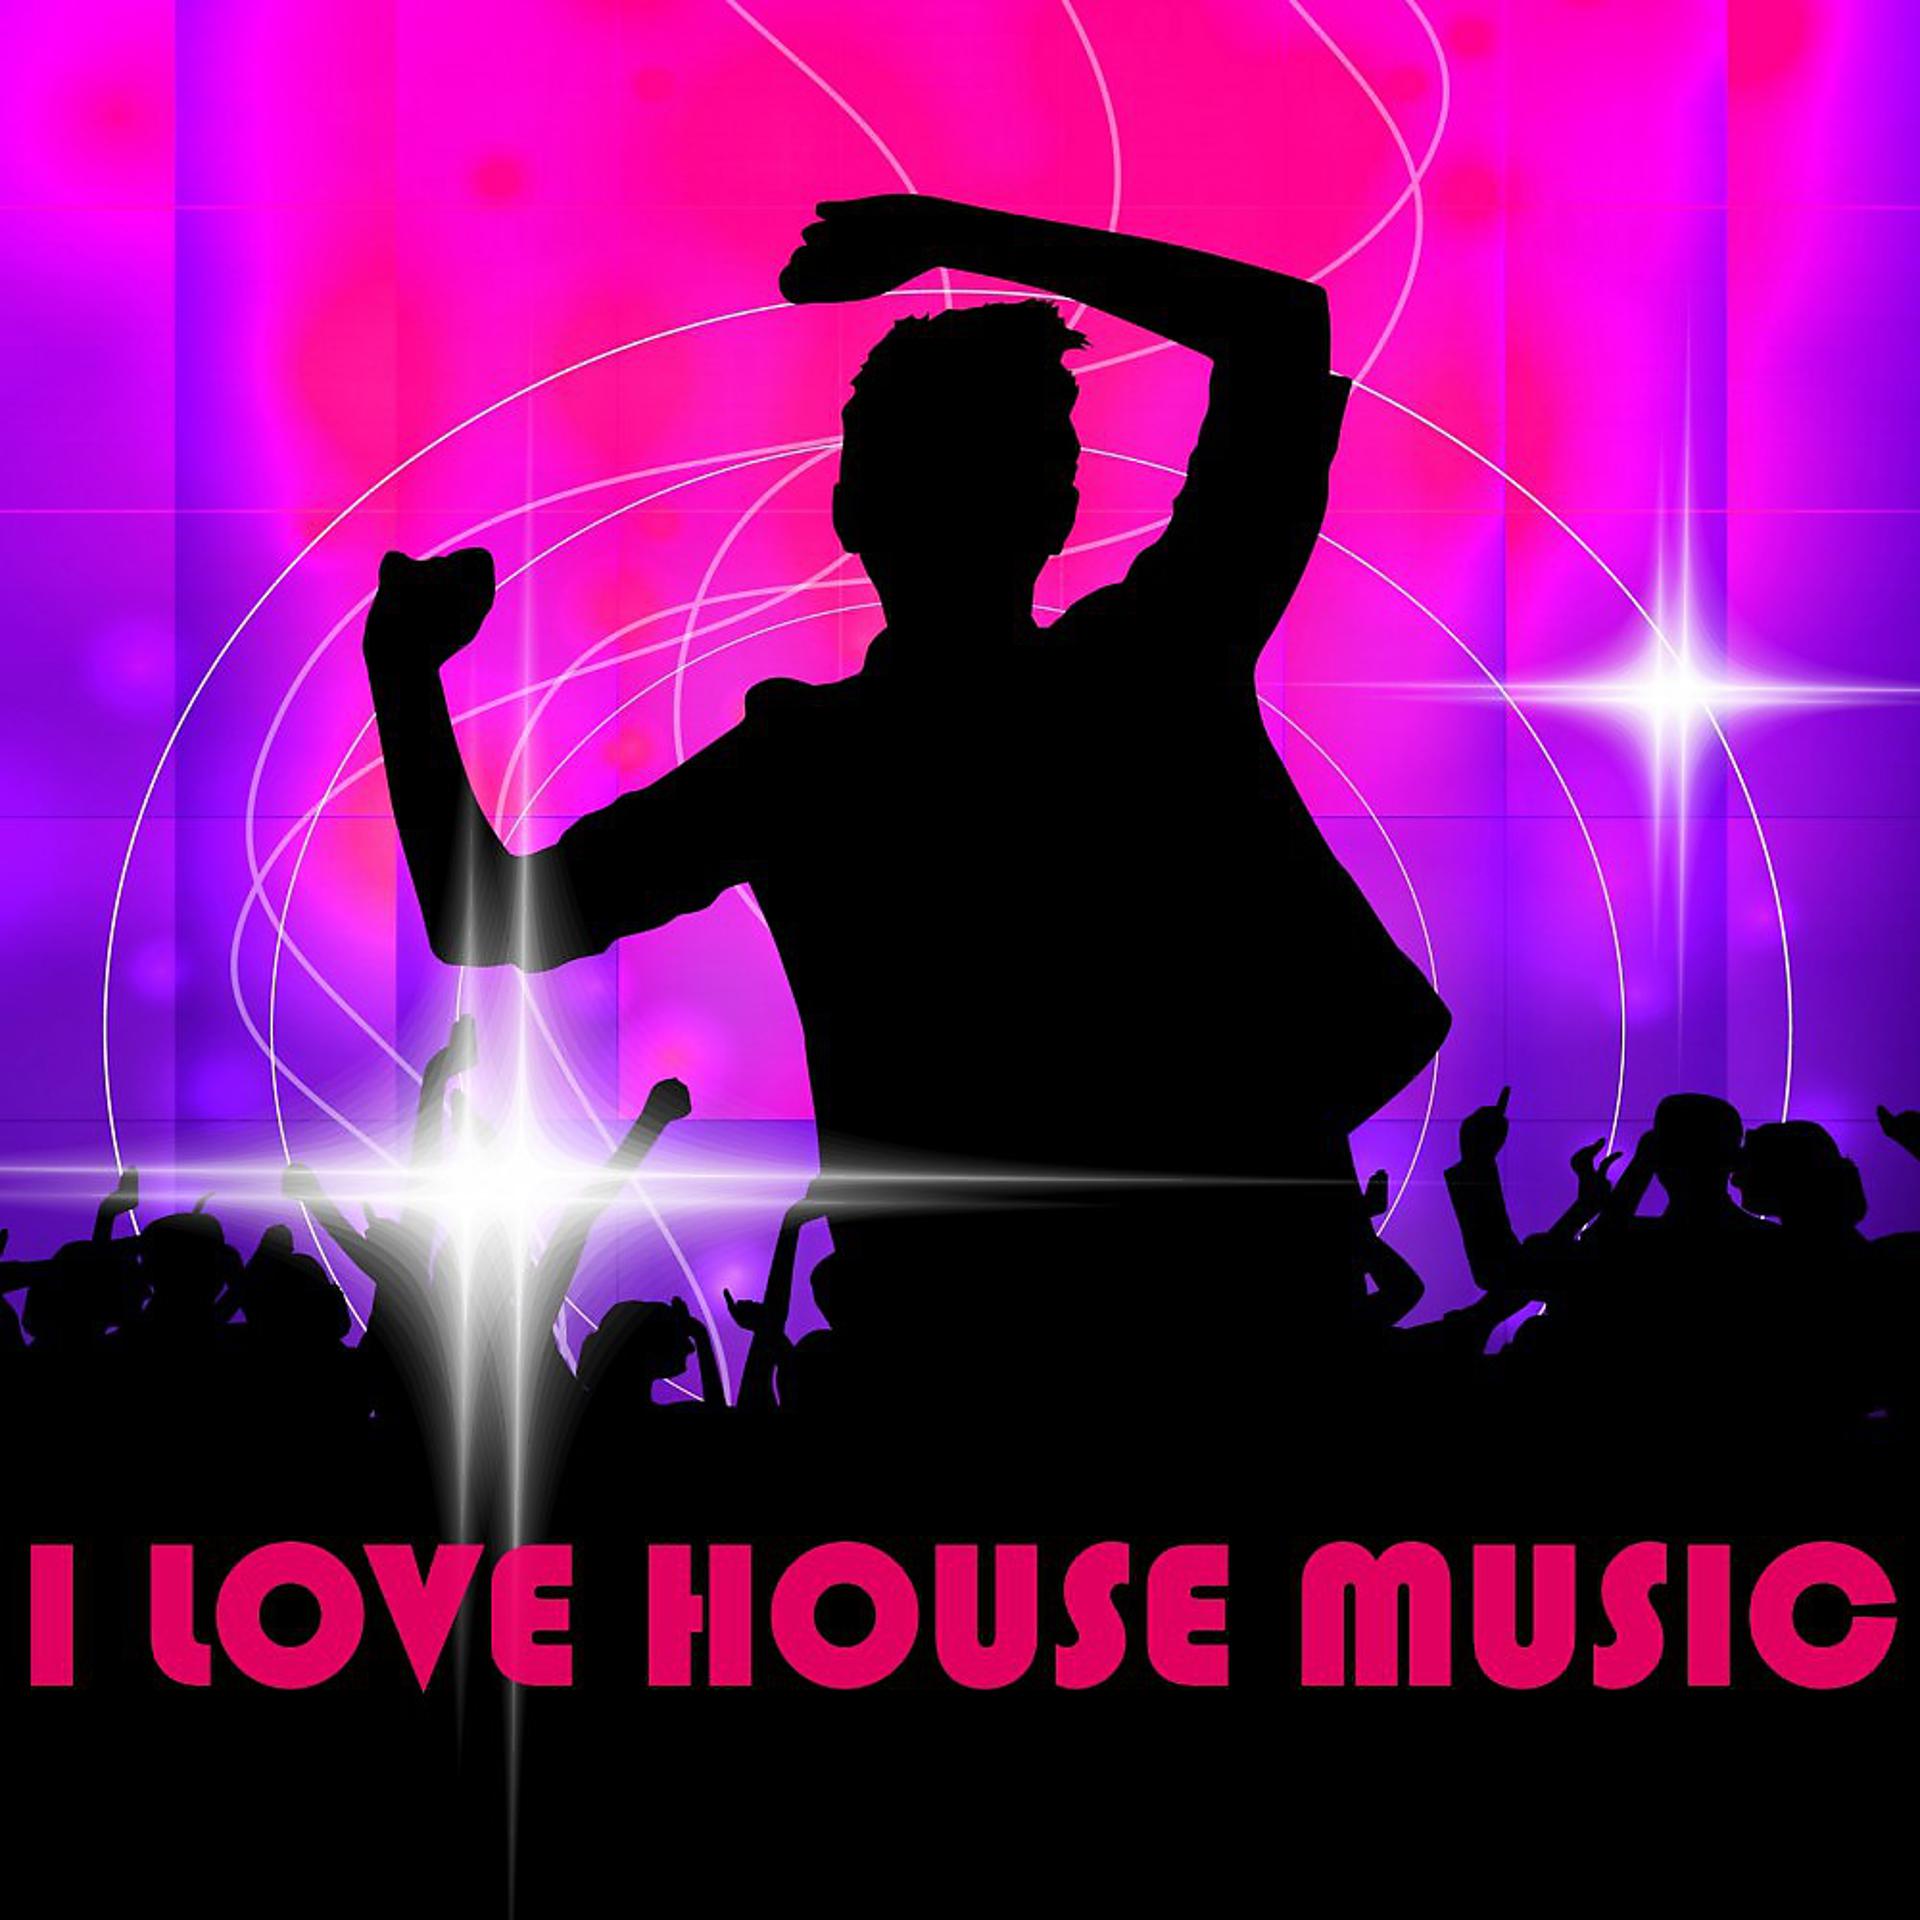 Музыка house music. Хаус Мьюзик. Жанры электронной музыки Хаус. House Music обложка. Хаус музыка картинки.